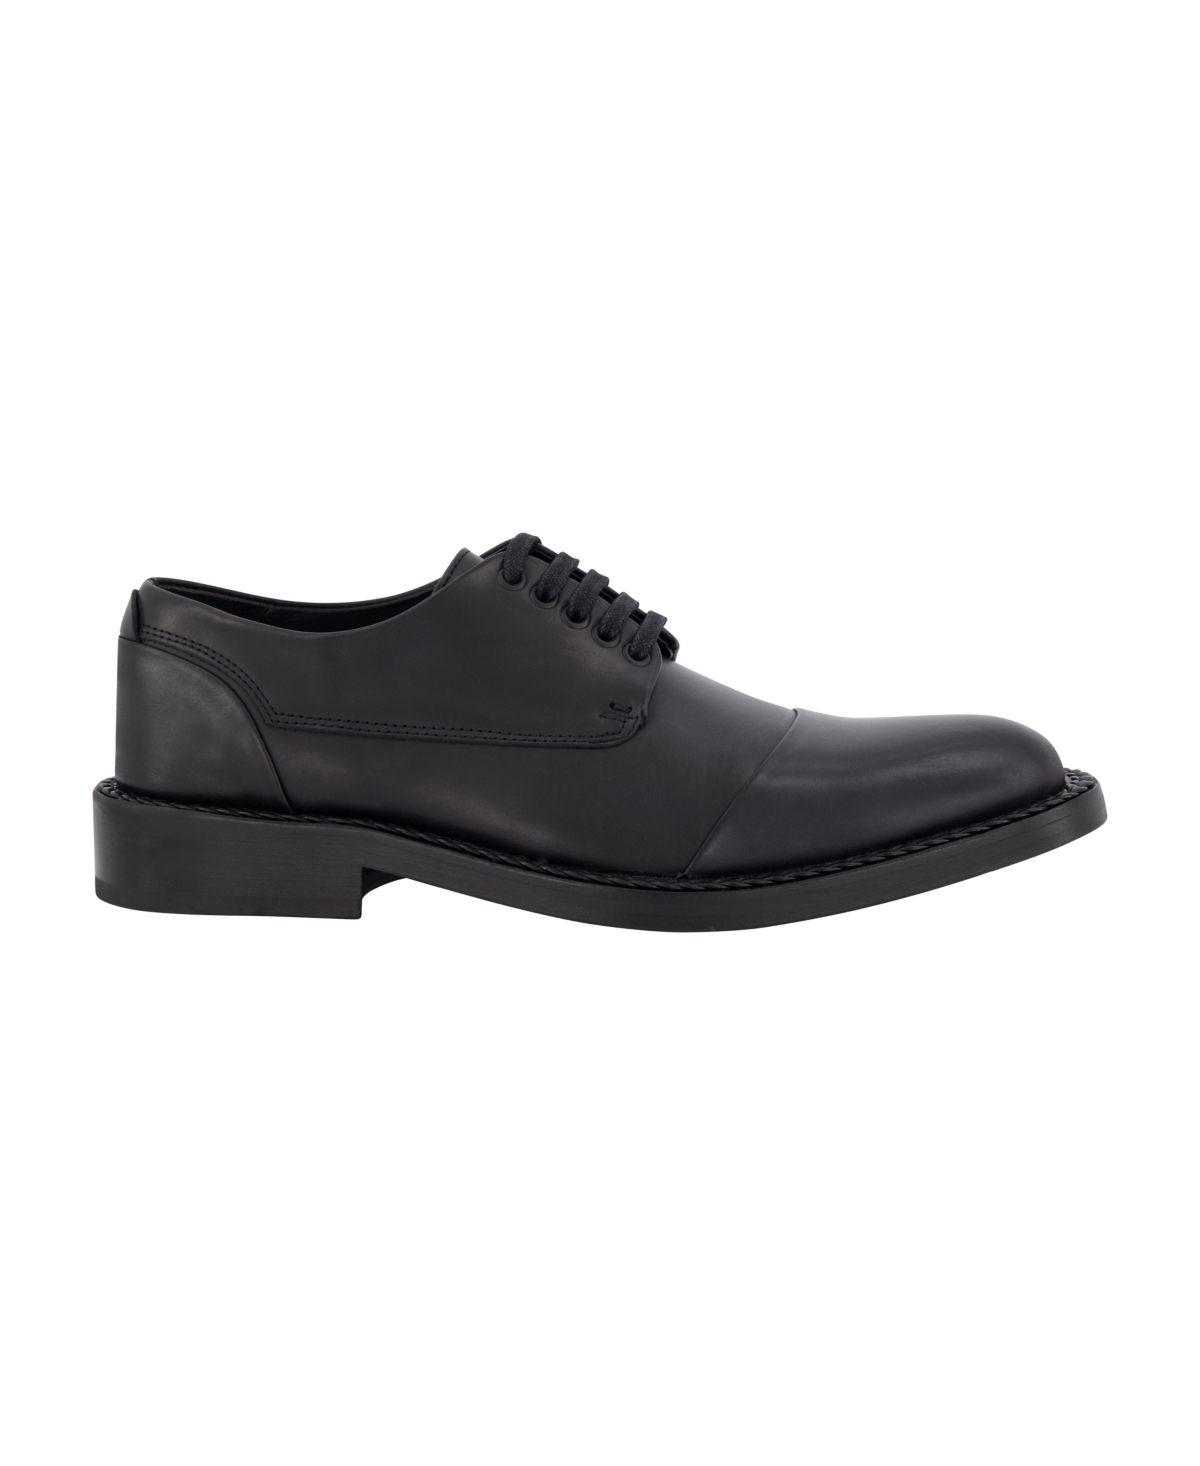 Men's Leather Cap Toe Dress Shoes - Black